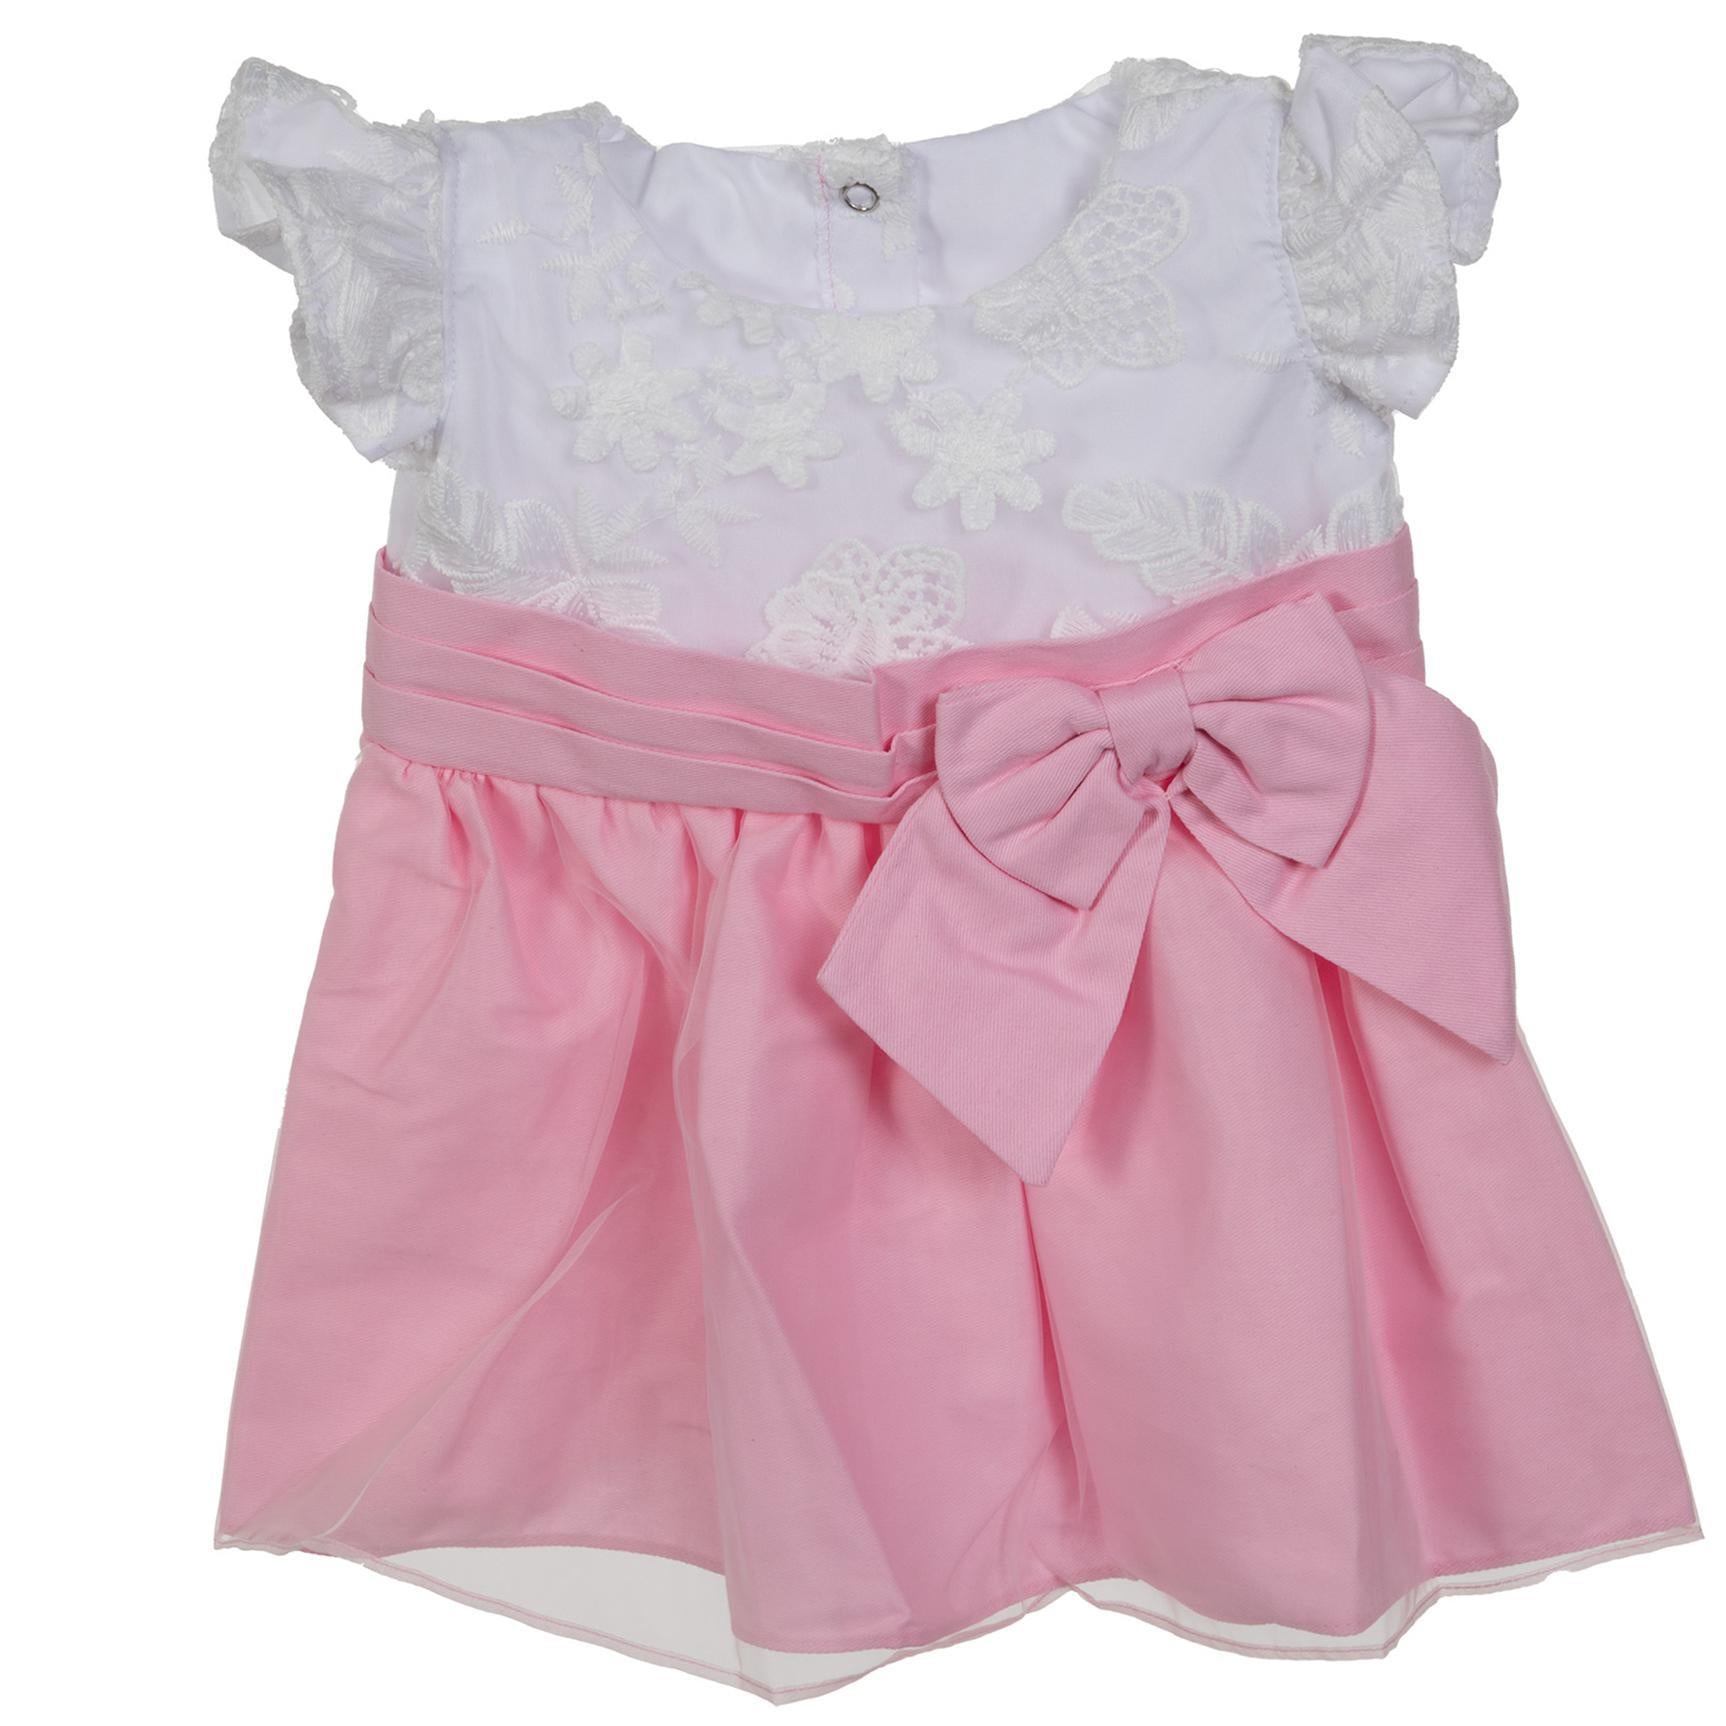 BLC B Dress Pink/White w/Bow fits 22"